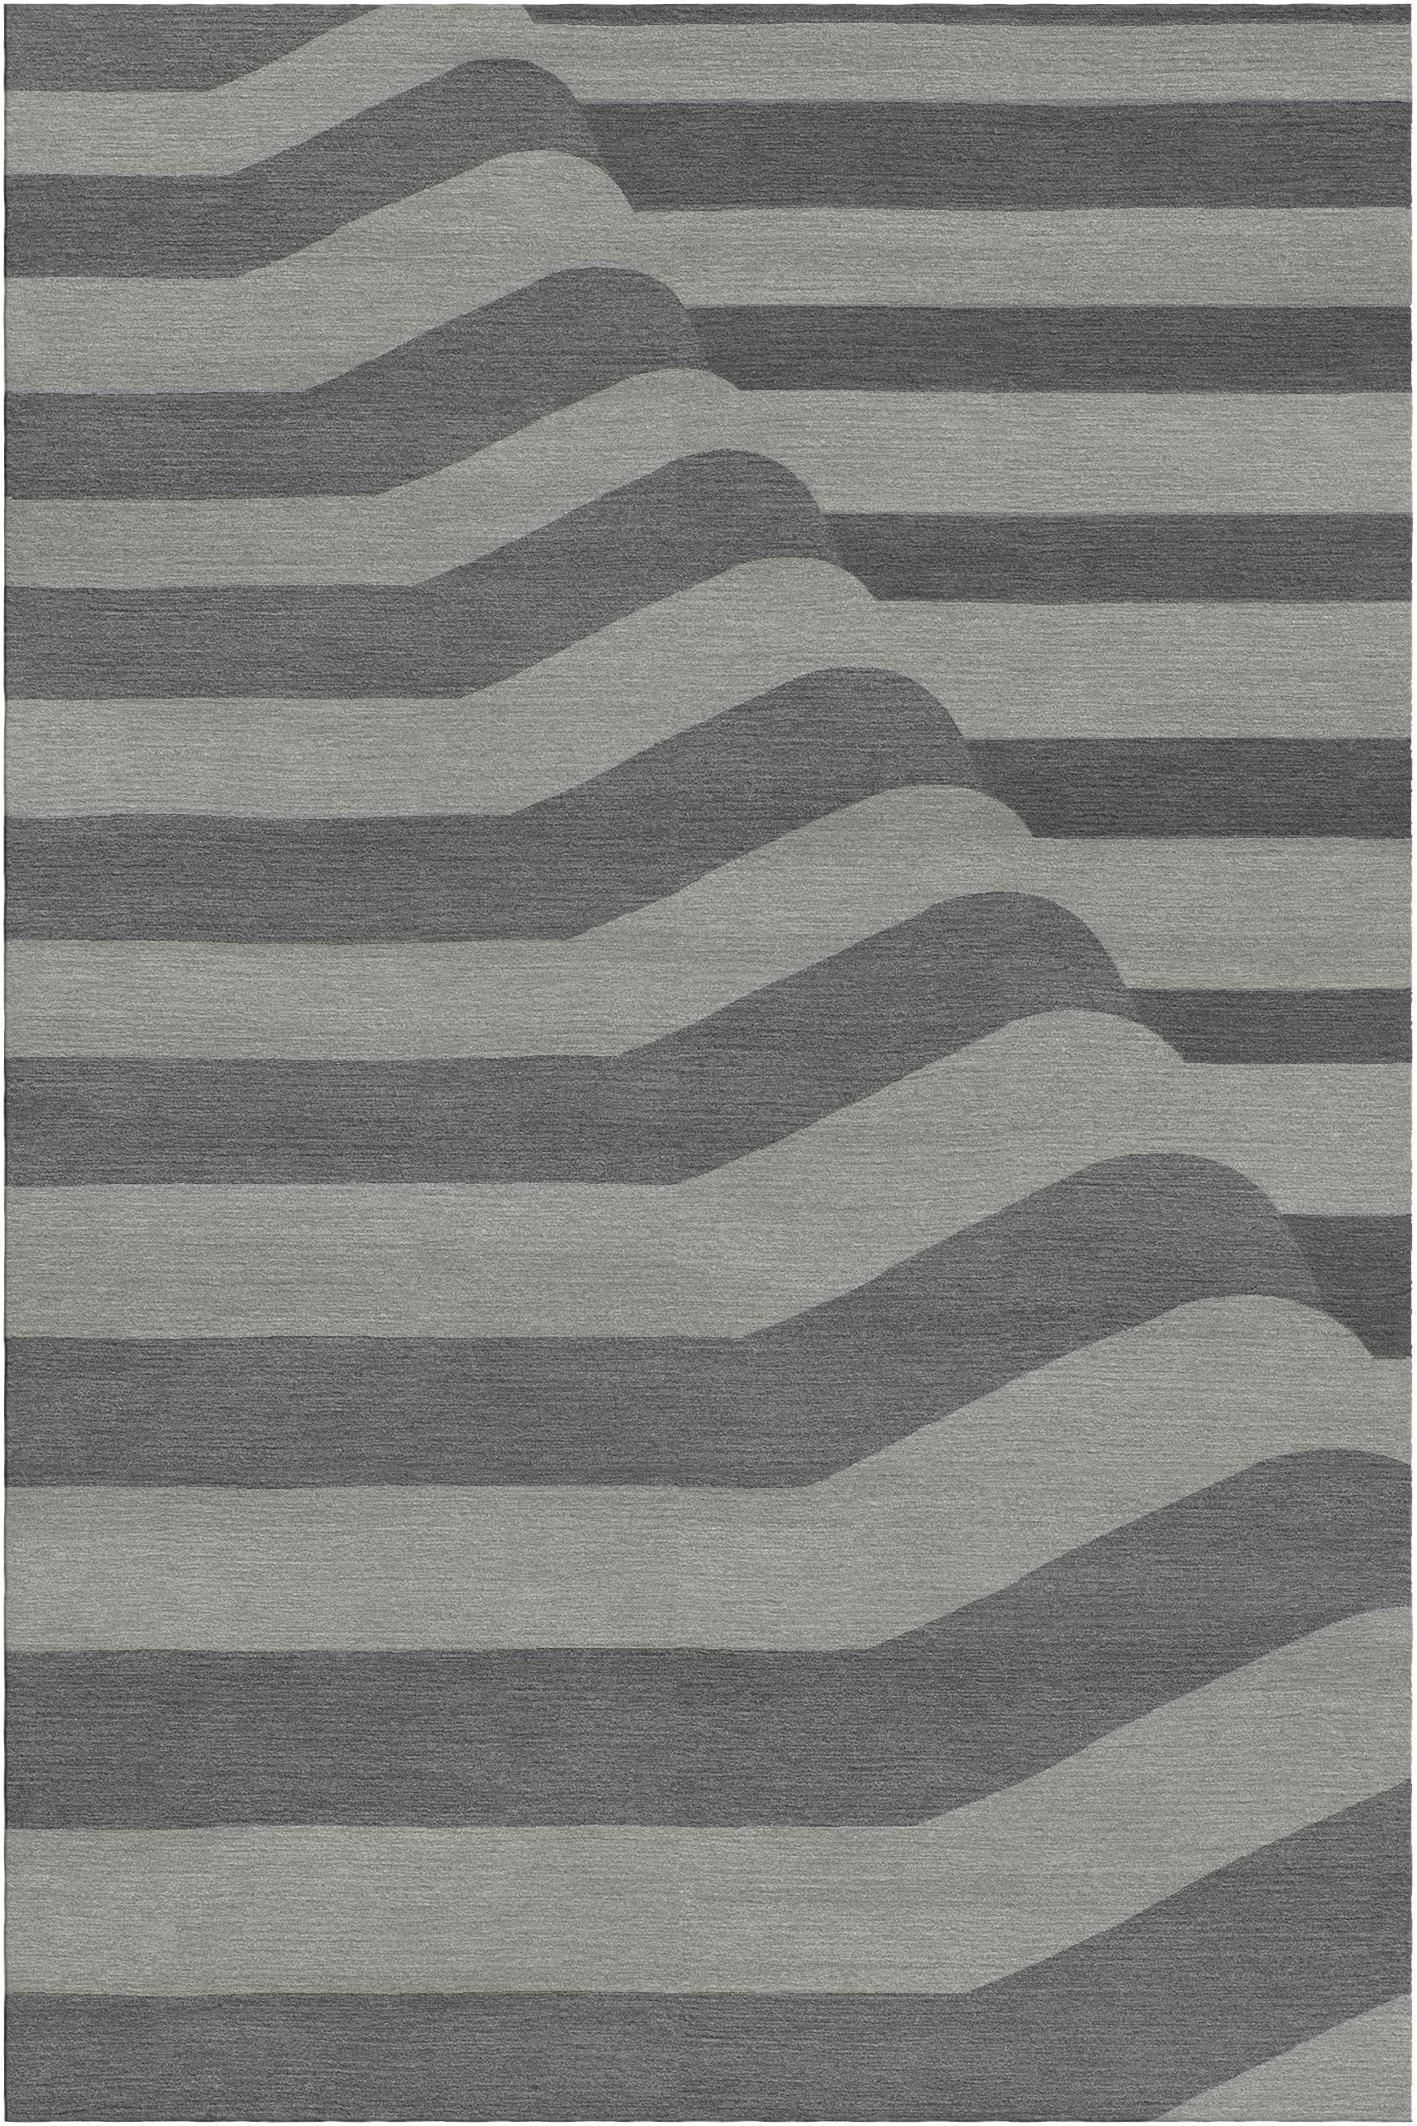 Pieghe-Teppich II von Giulio Brambilla
Abmessungen: D 300 x B 200 x H 1,5 cm
MATERIALIEN: NZ-Wolle, Bambusseide
Erhältlich in anderen Farben.

Mit seinem abstrakten Design, das sich durch eine zweidimensionale Reihe von Falten (auf Italienisch